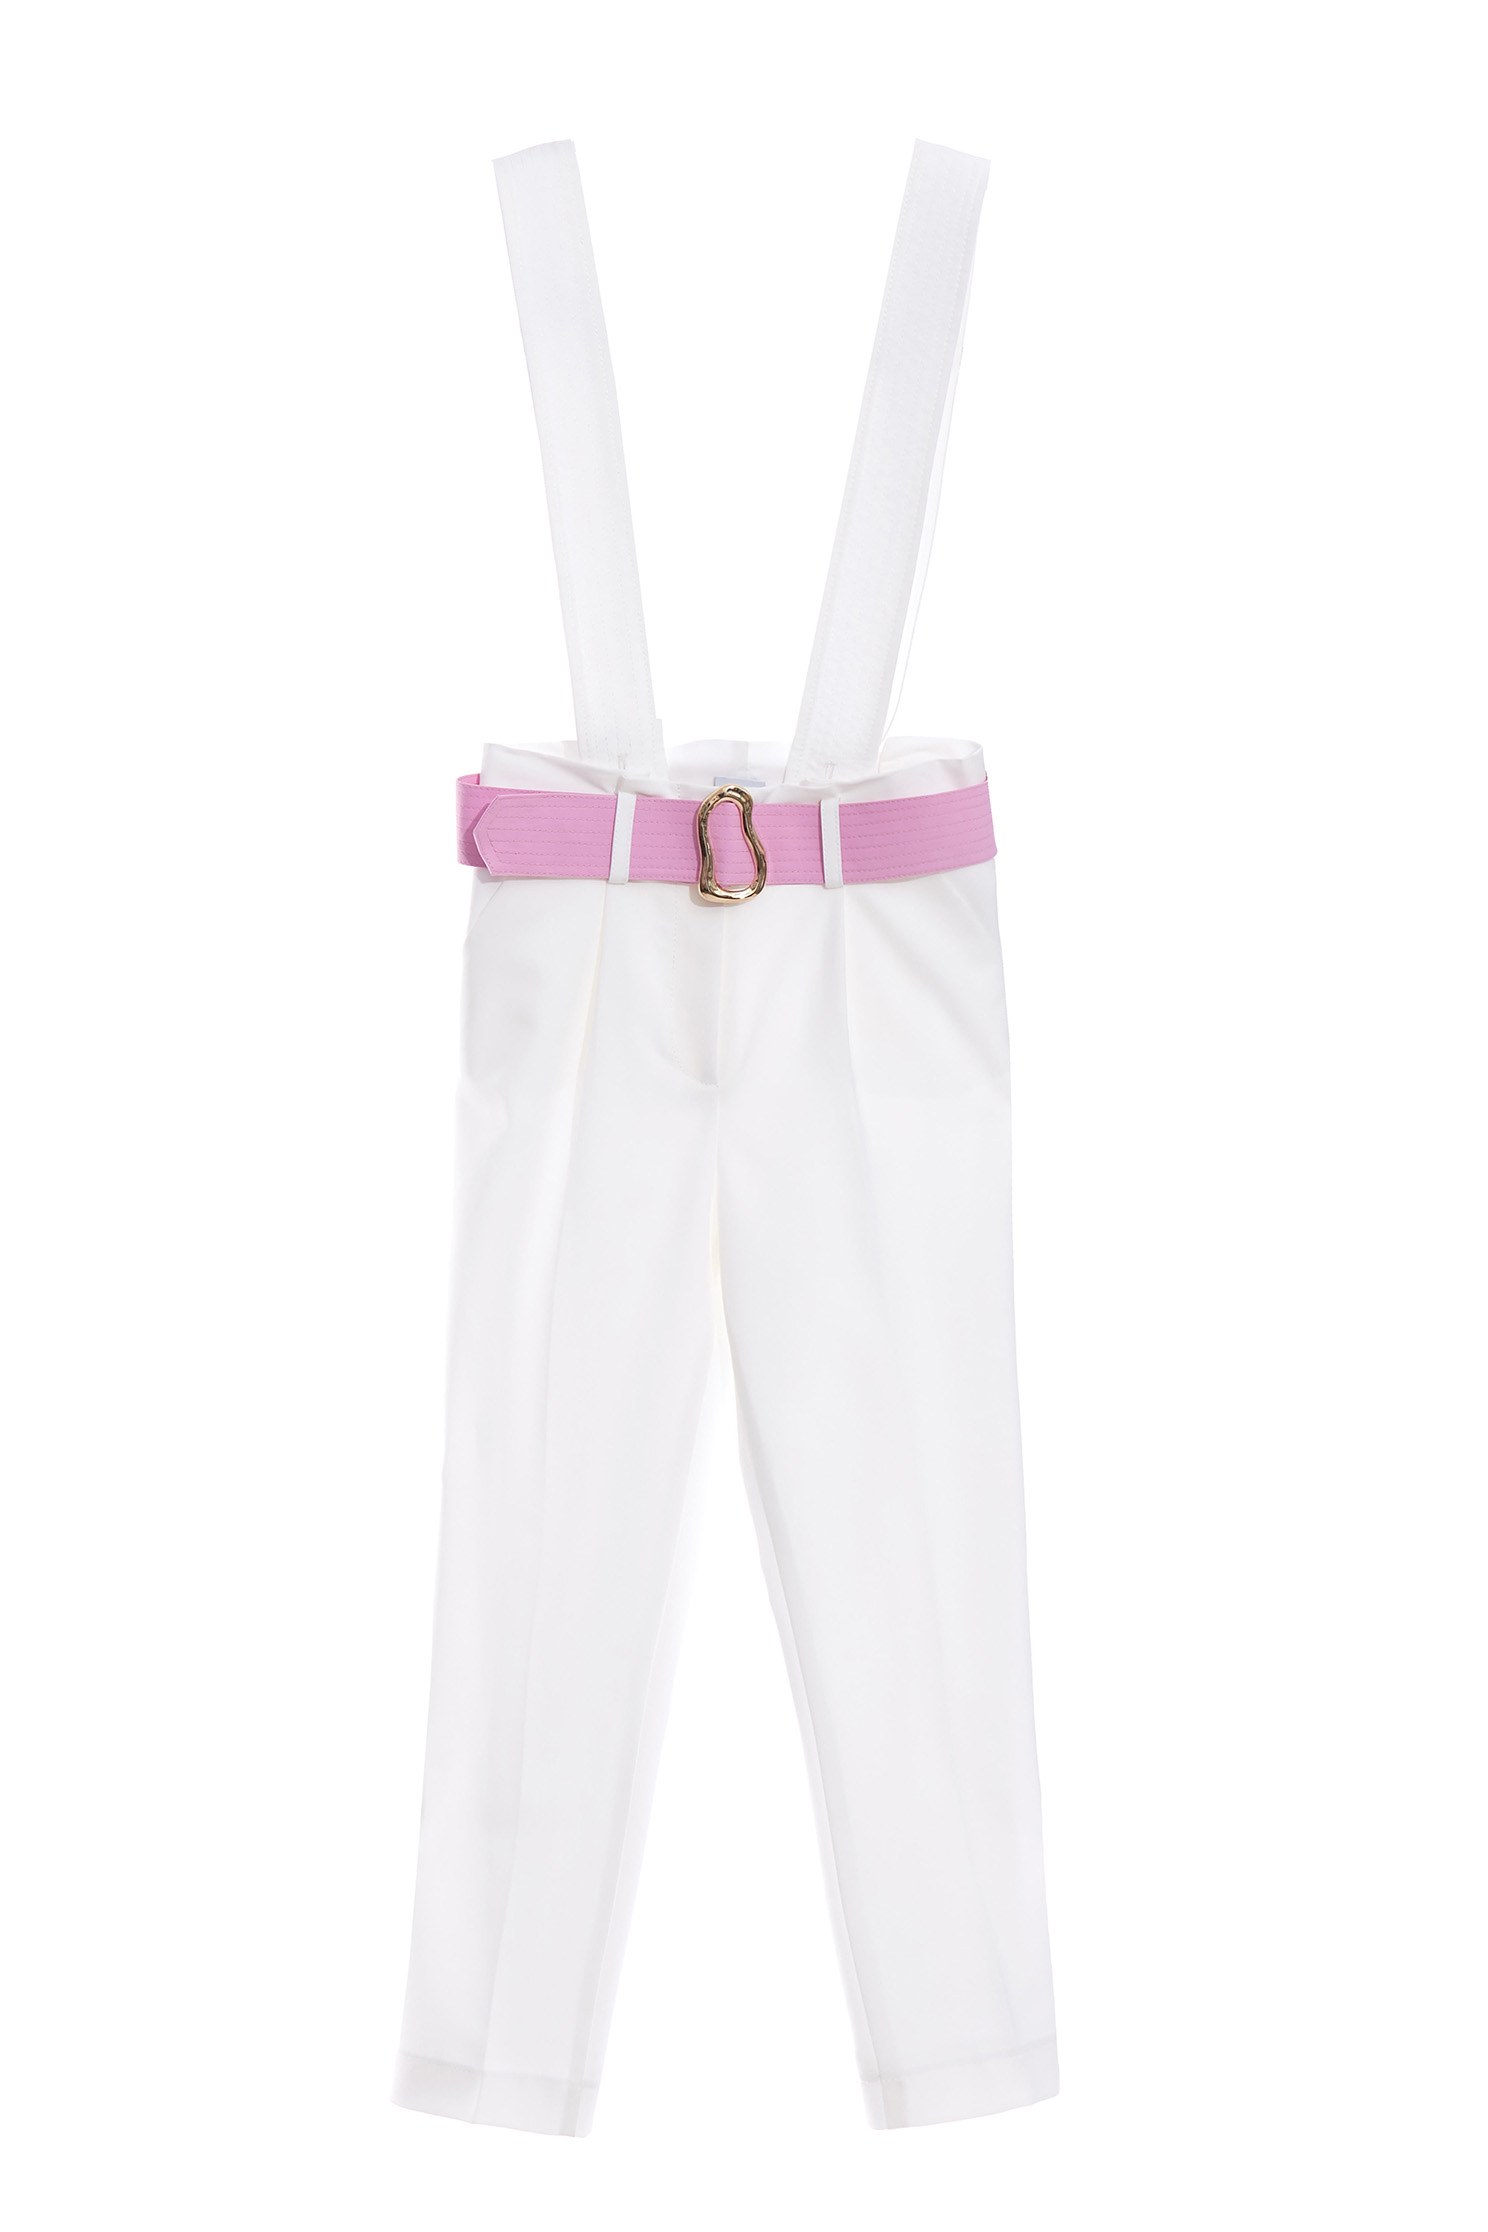 附粉色金屬環腰帶吊帶褲,簡約 白色,白色 附腰帶,可拆式 白色附粉色金屬環腰帶吊帶褲,春夏穿搭,約會特輯,腰帶,連身褲